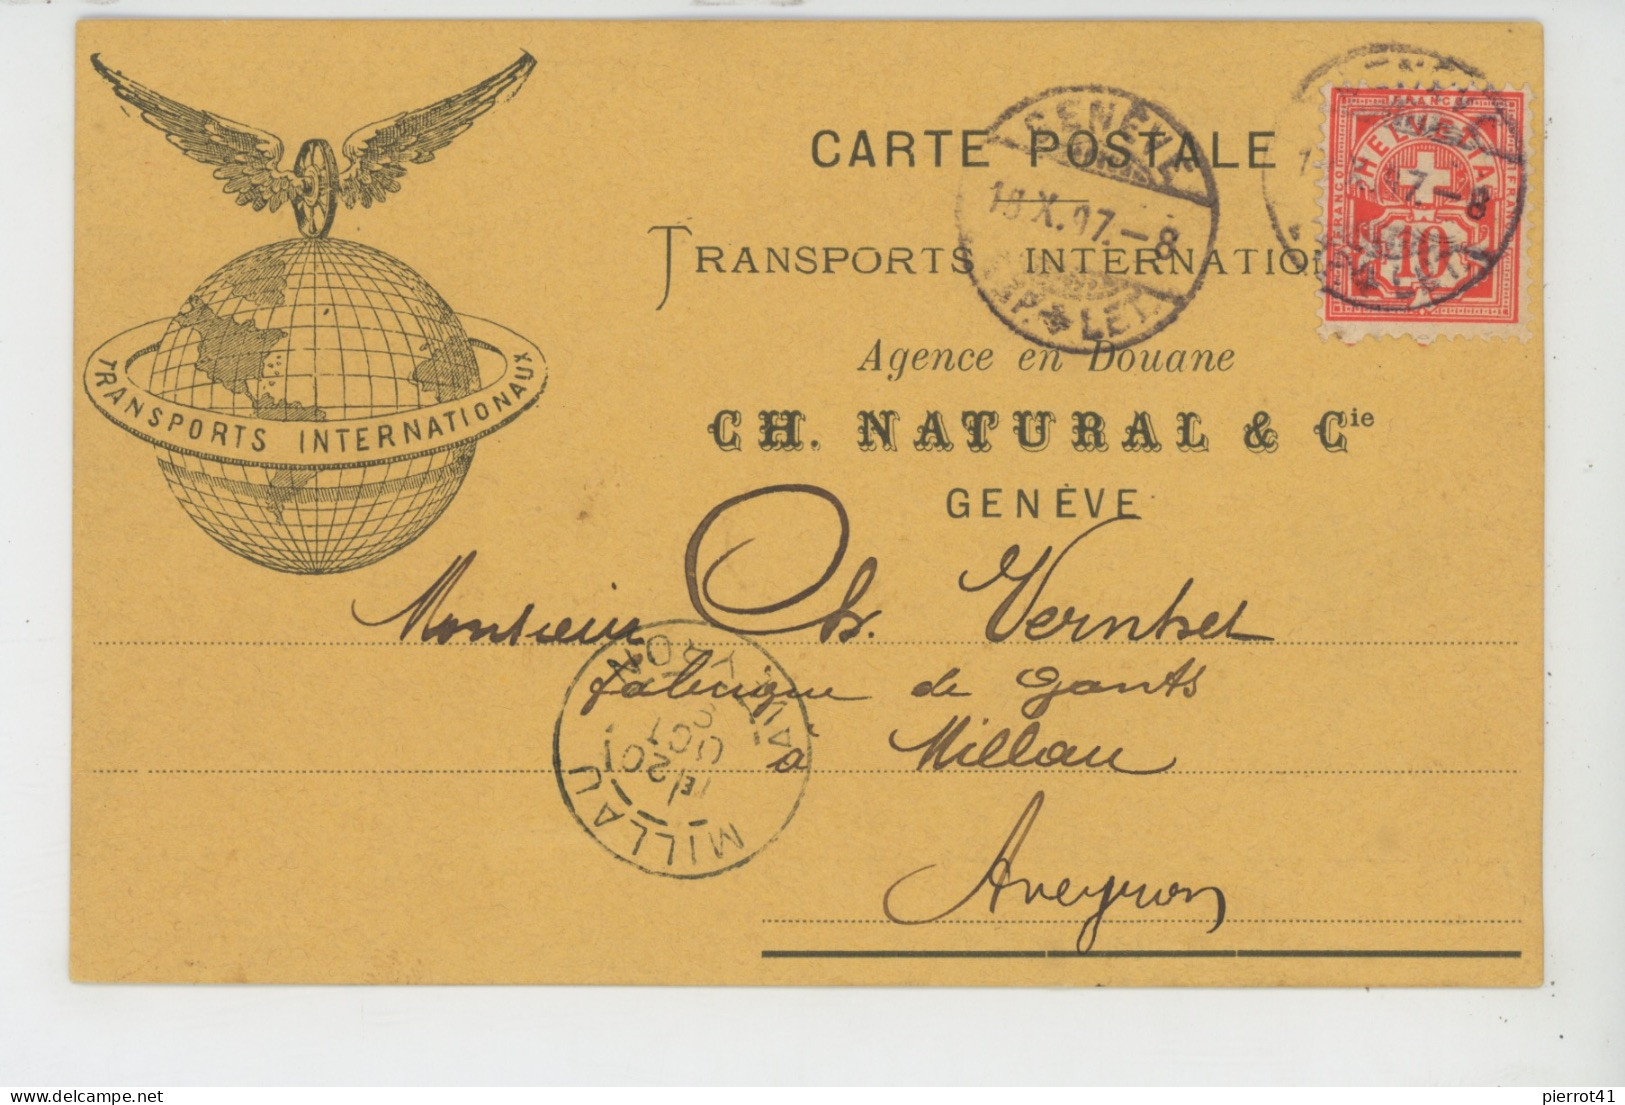 SUISSE - GENEVE - Carte De Correspondance De 1897 Des TRANSPORTS INTERNATIONAUX CH. NATURAL & Cie - Agence En Douane - Genève